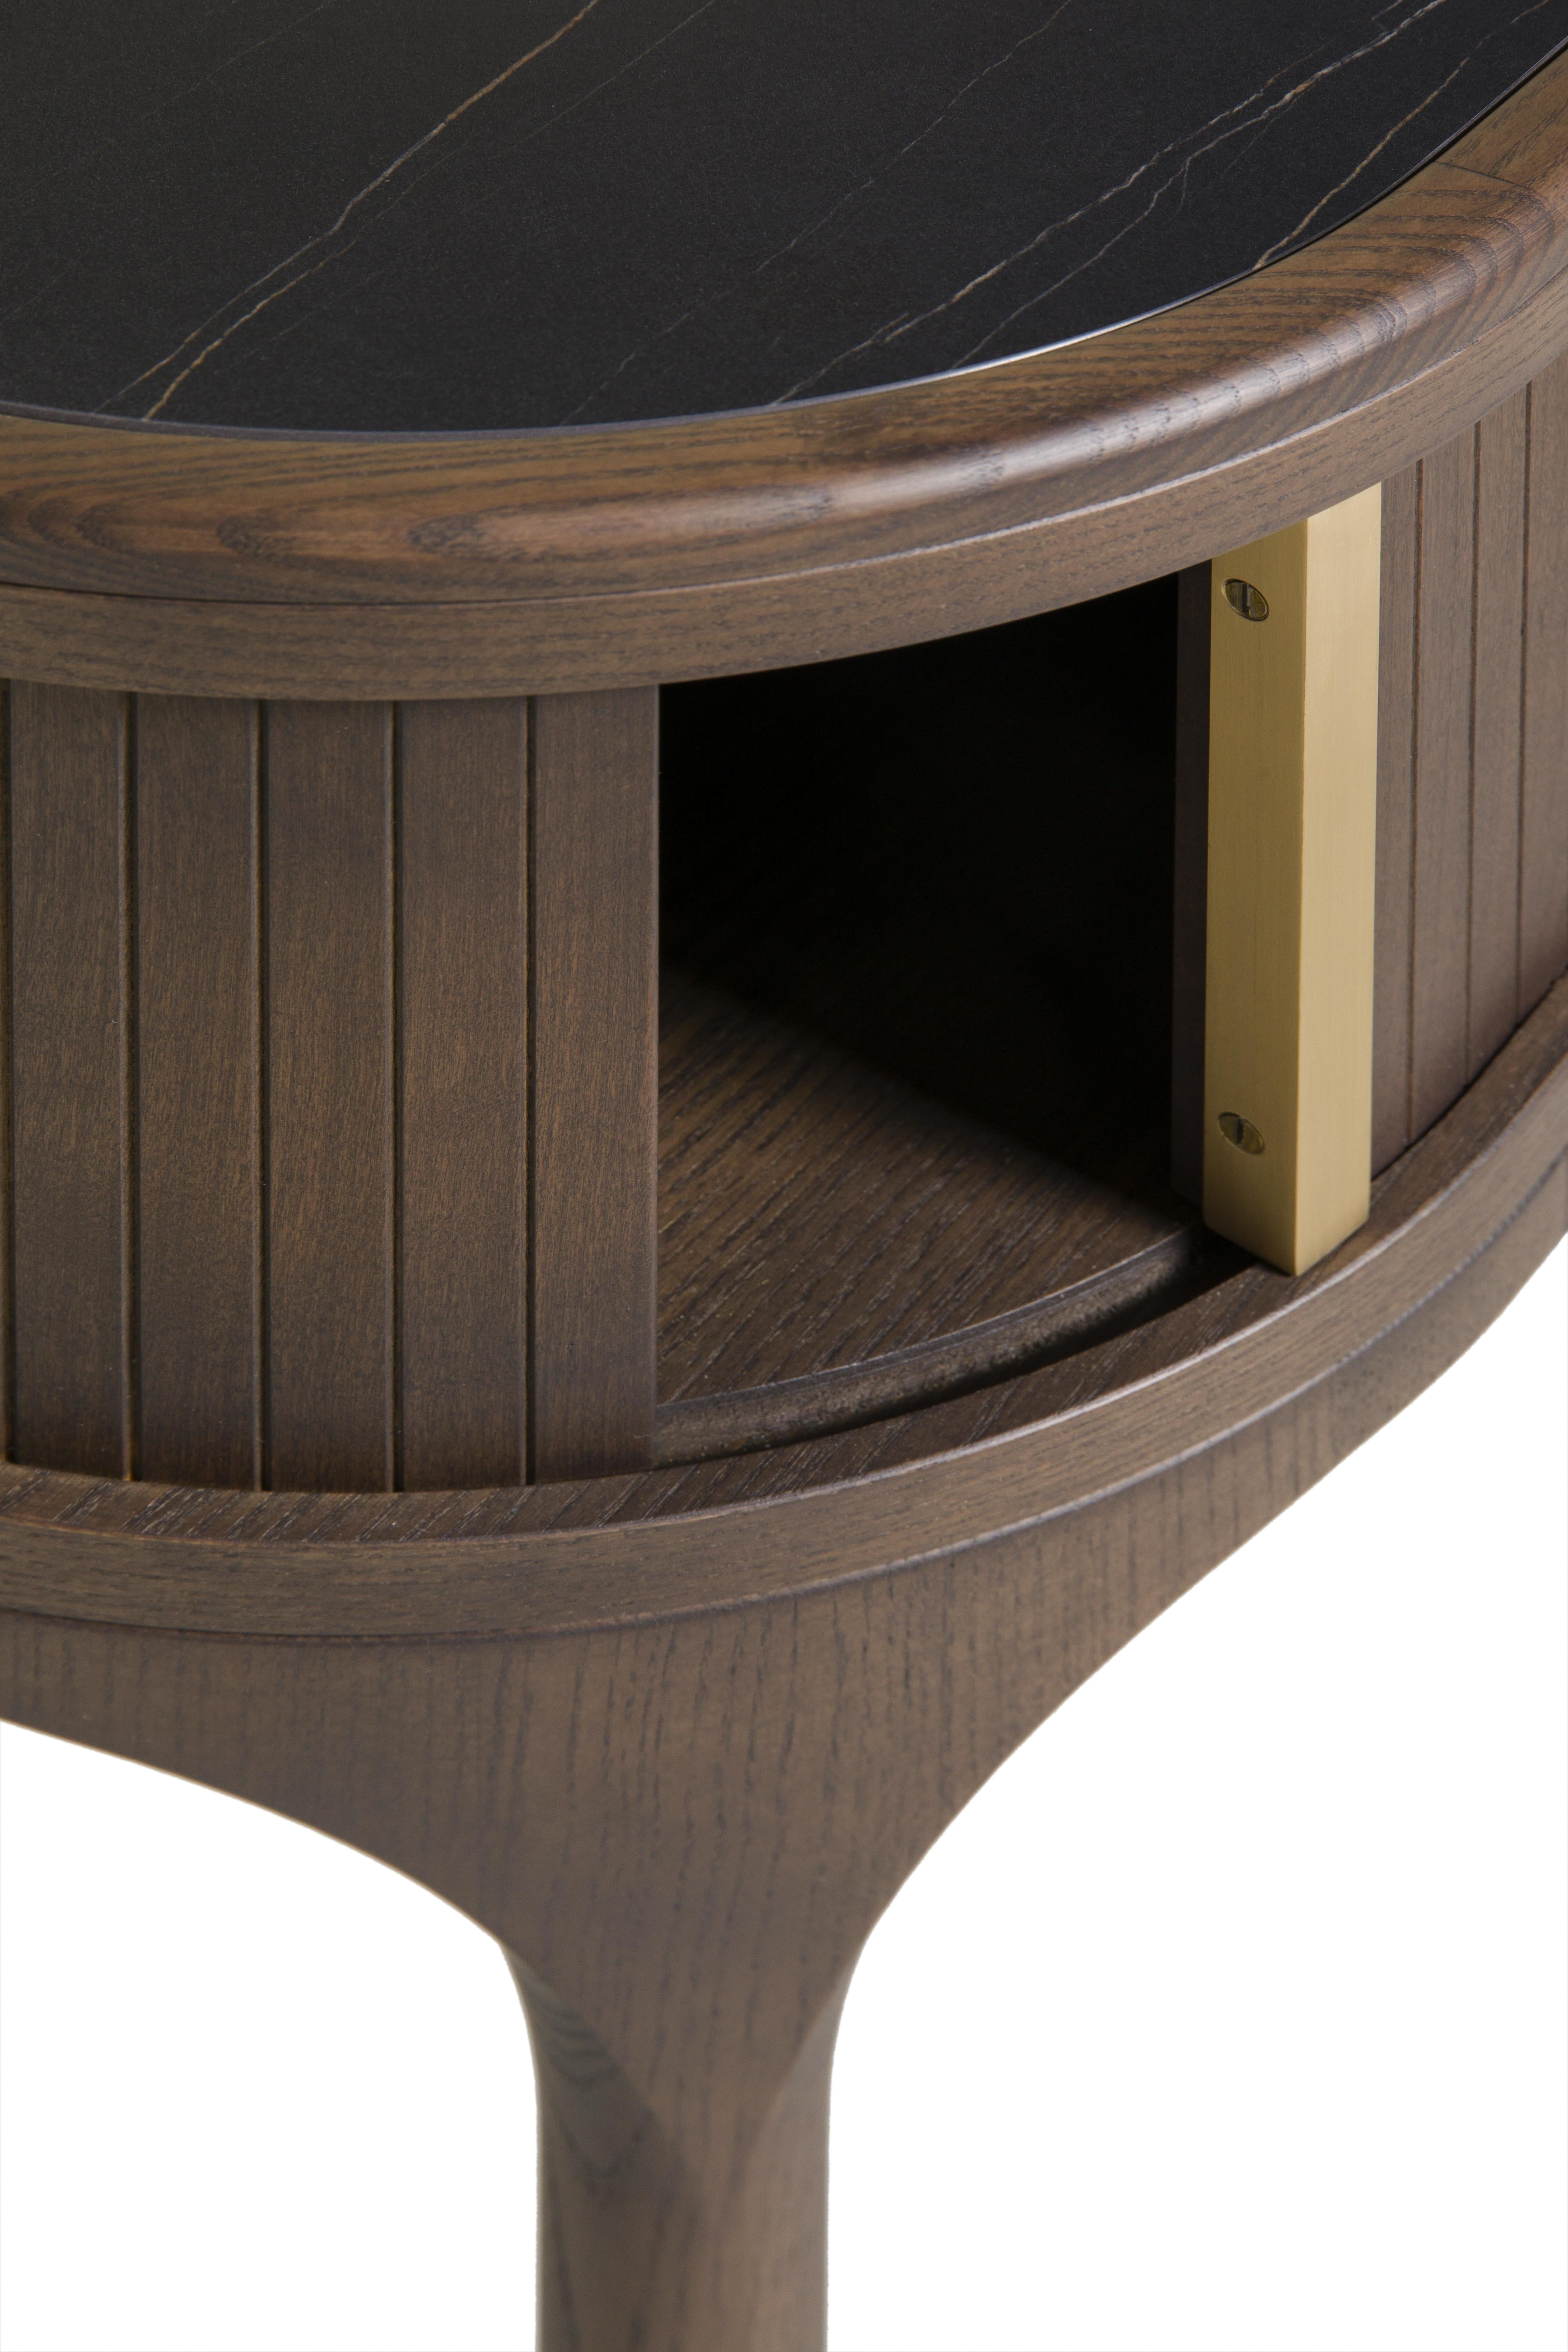 Nachttisch aus Eschenholz mit Glas- oder Marmorplatte, einem durch eine Schiebetür geschlossenen Fach und Messinggriffen. Geformter Fuß mit Messingschale.
Entwurf Libero Rutilo

 